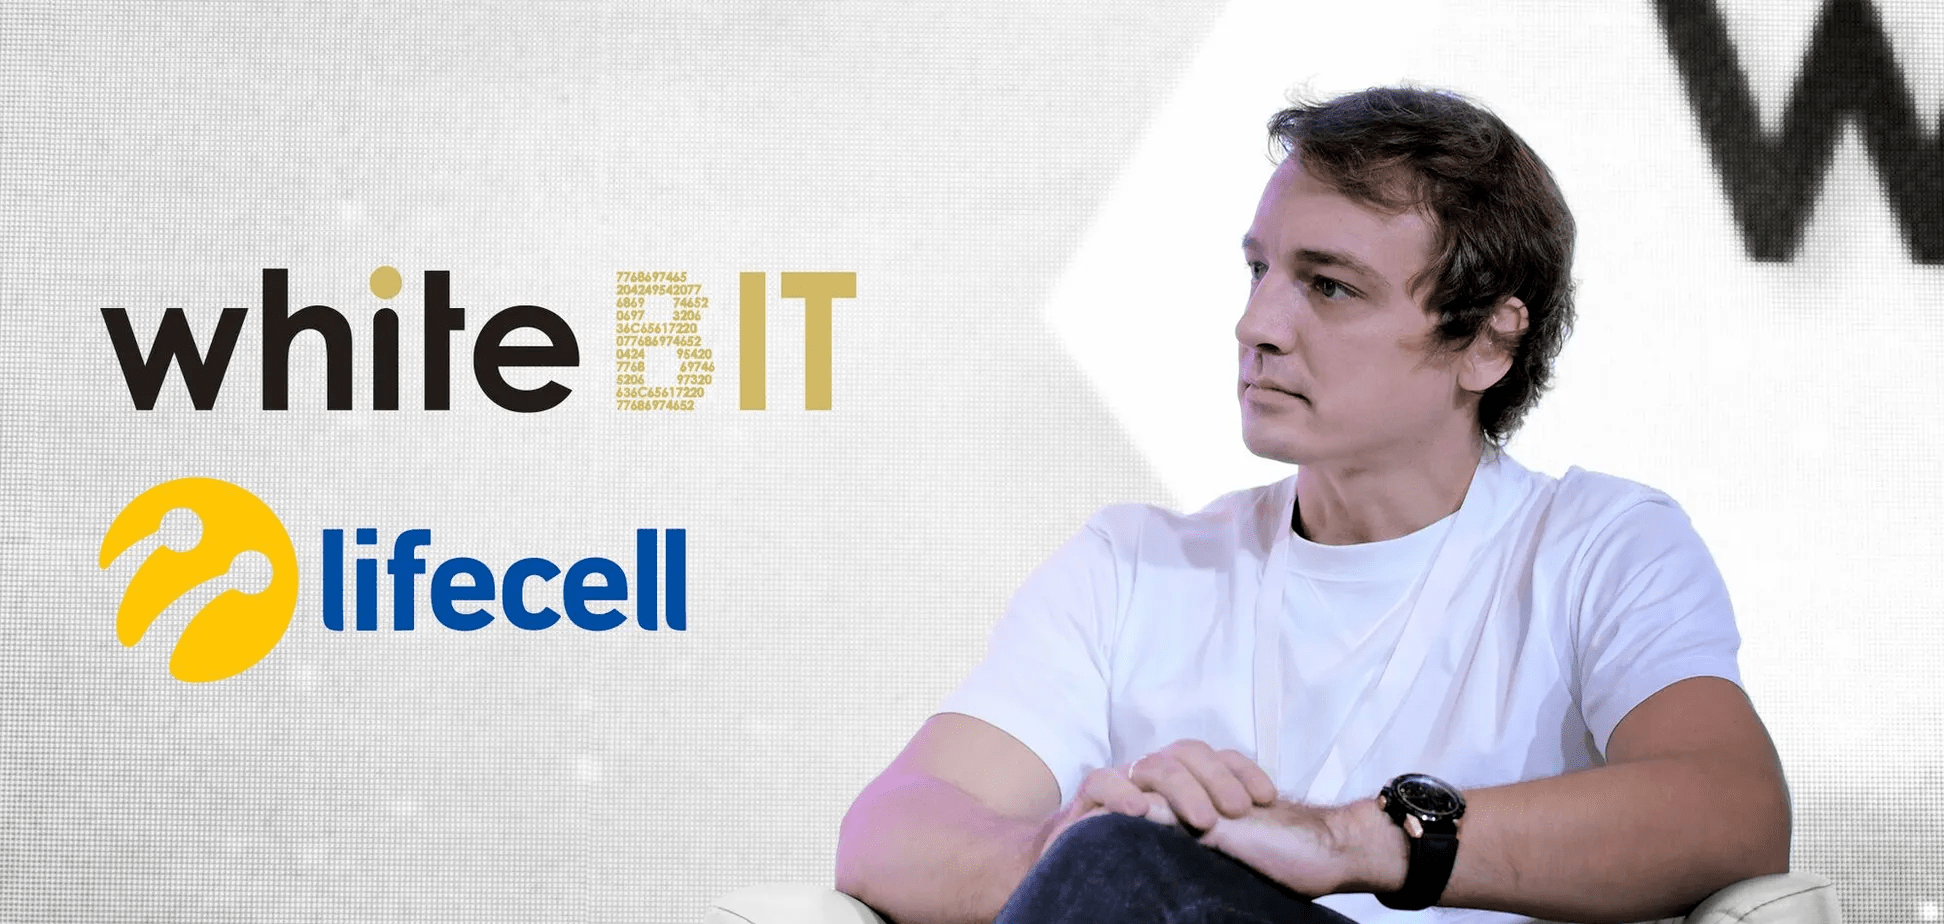 Биржа WhiteBIT и оператор lifecell дадут доступ к крипто 9 млн абонентов